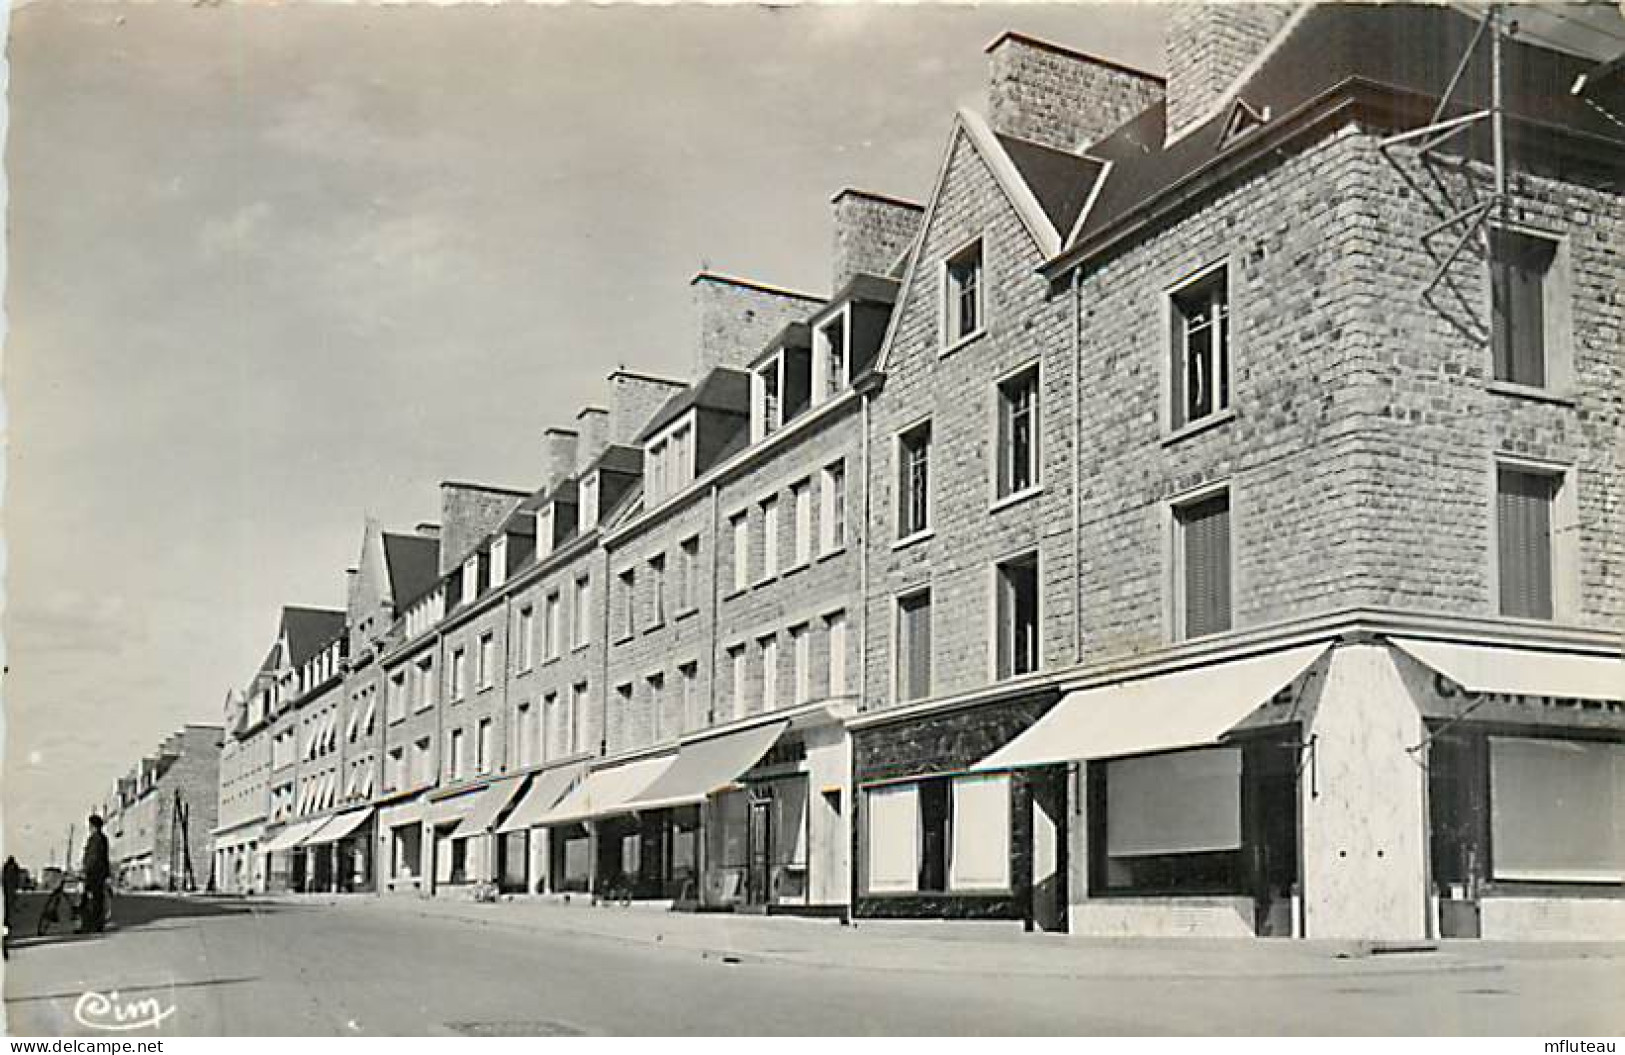 50* ST HILAIRE DU HARCOUET Rue W, Rousseau  (cpsm 9x14)  MA102,0091 - Saint Hilaire Du Harcouet